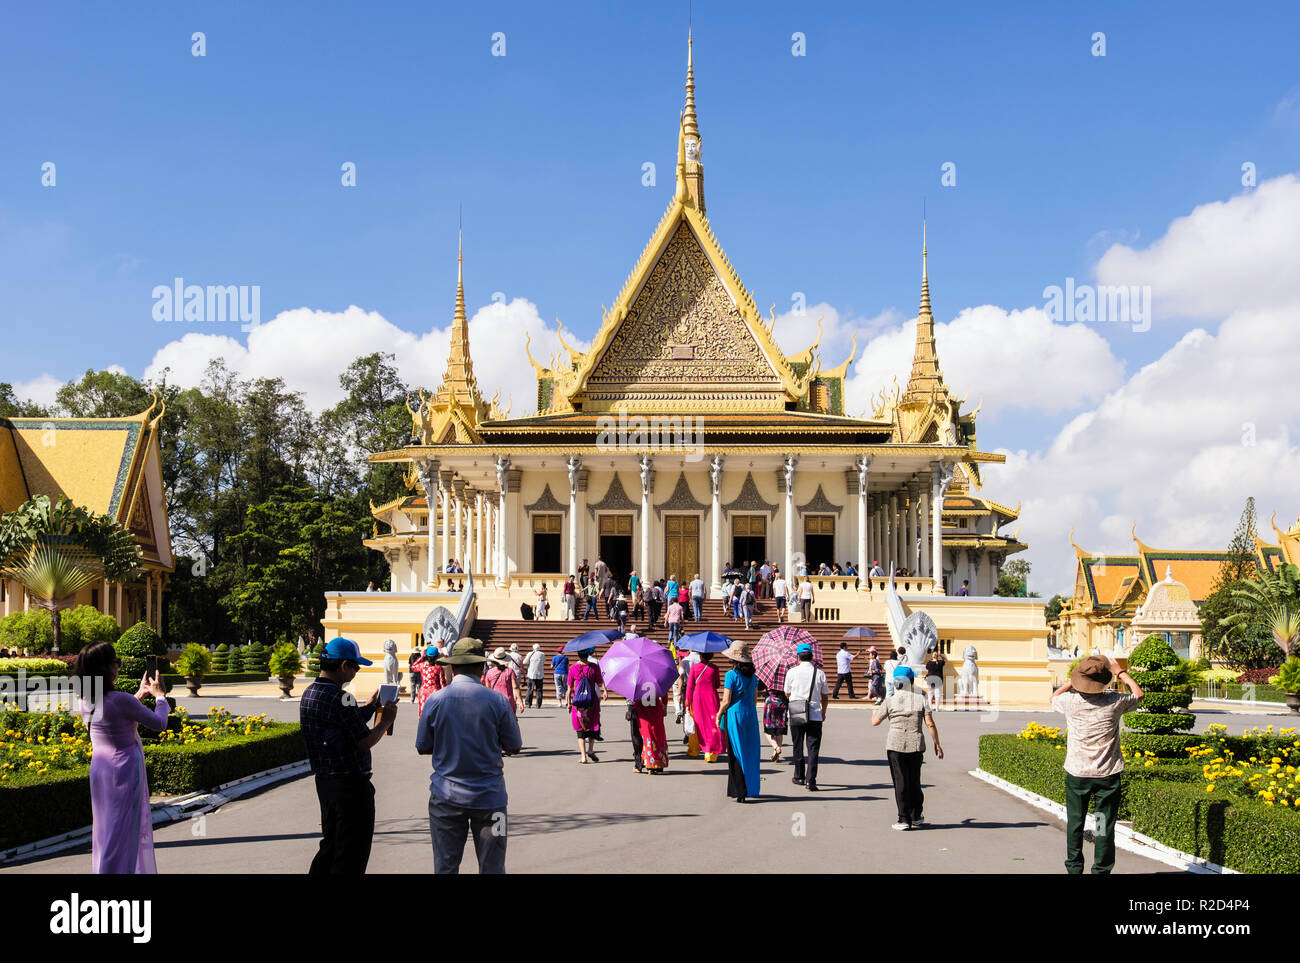 Les touristes visitant 20e siècle trône Hall à Palais Royal complexe. Phnom Penh, Cambodge, Asie du sud-est Banque D'Images